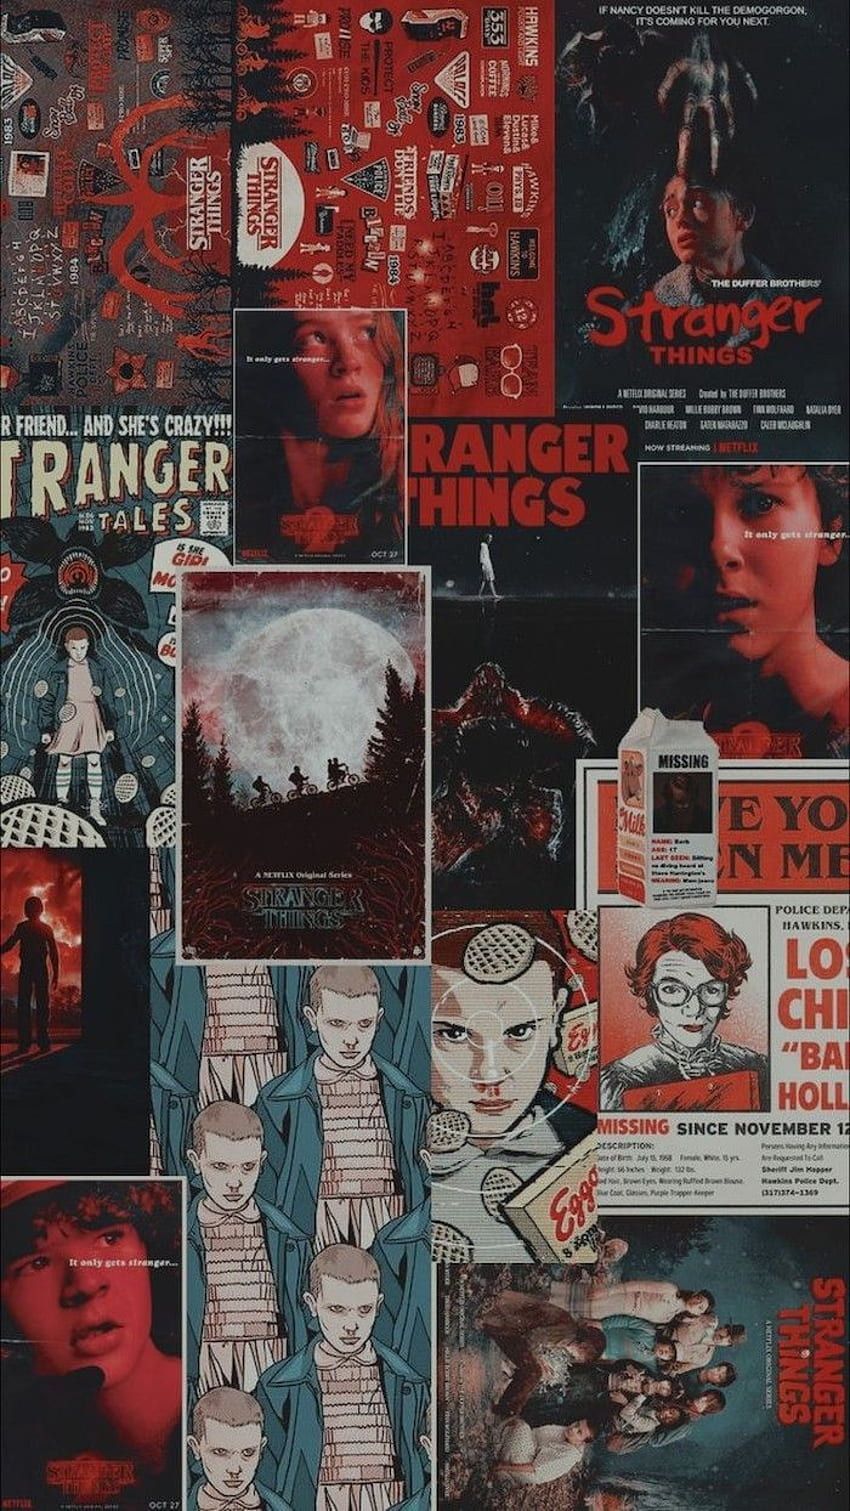 Stranger Things wallpaper for your phone or desktop. - Stranger Things